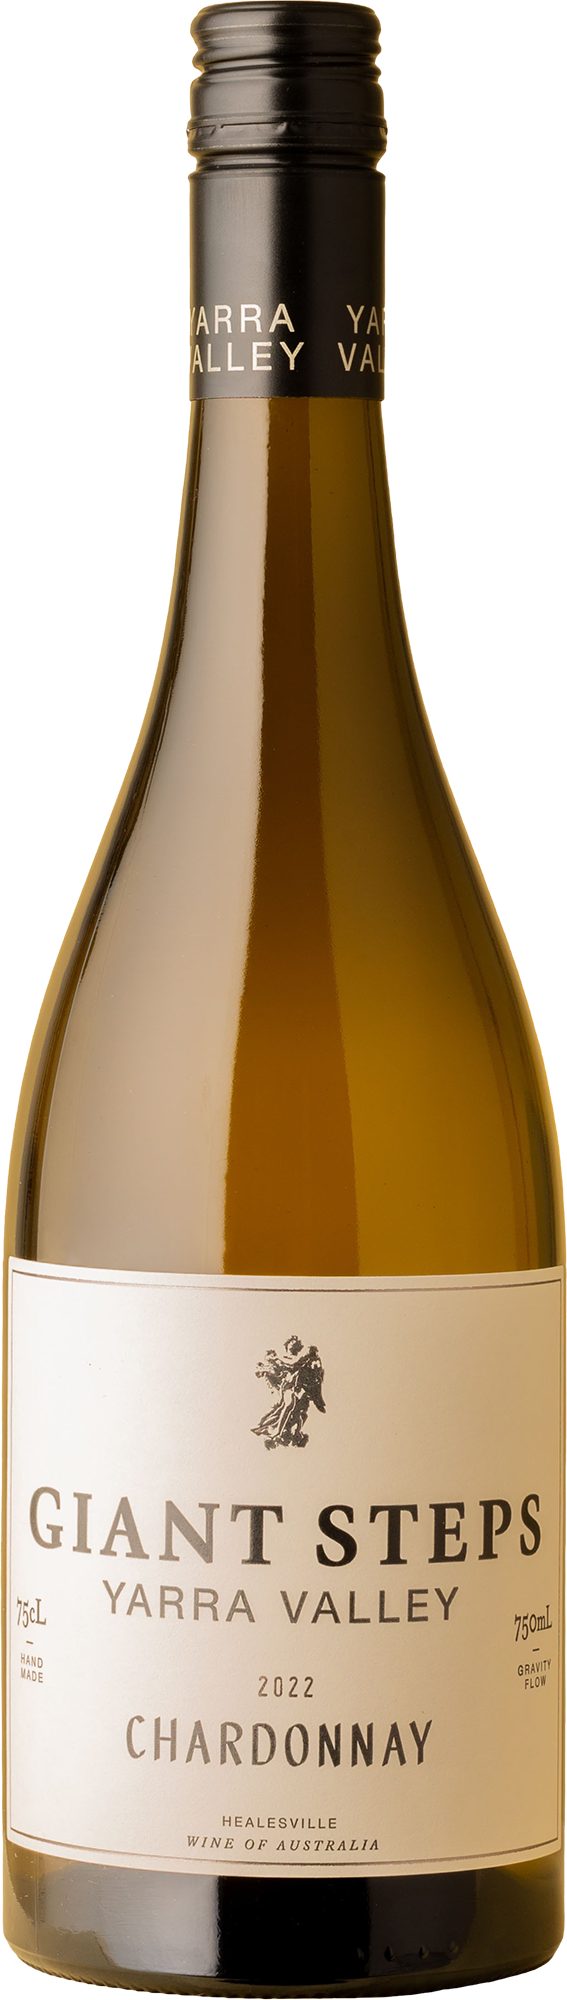 Giant Steps - Yarra Valley Chardonnay 2022 White Wine